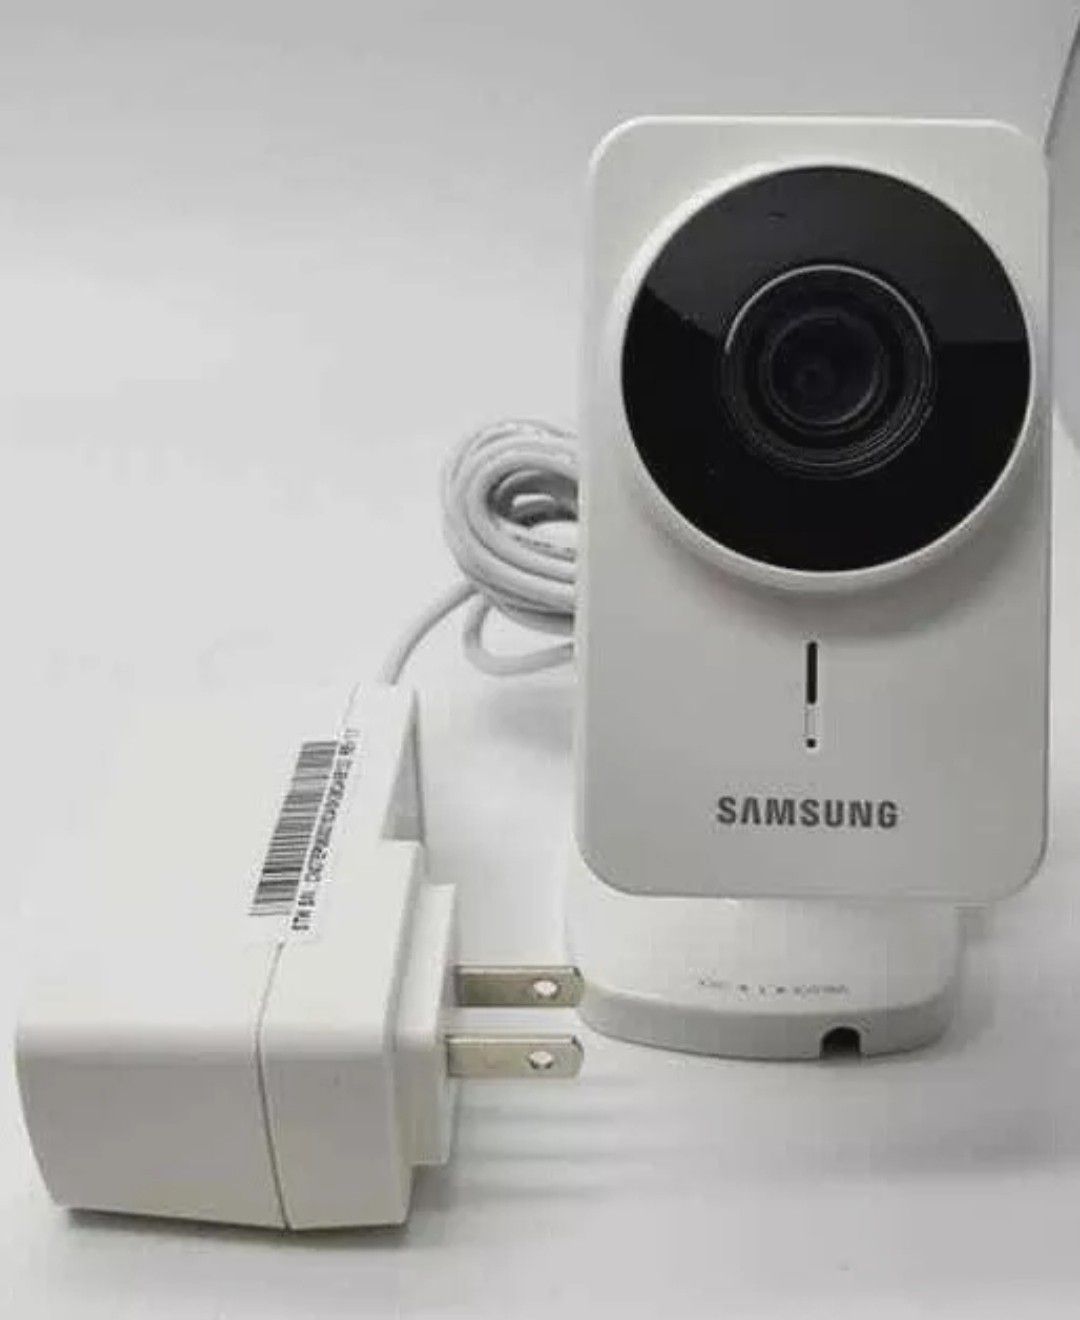 Samsung smartcam security Camera